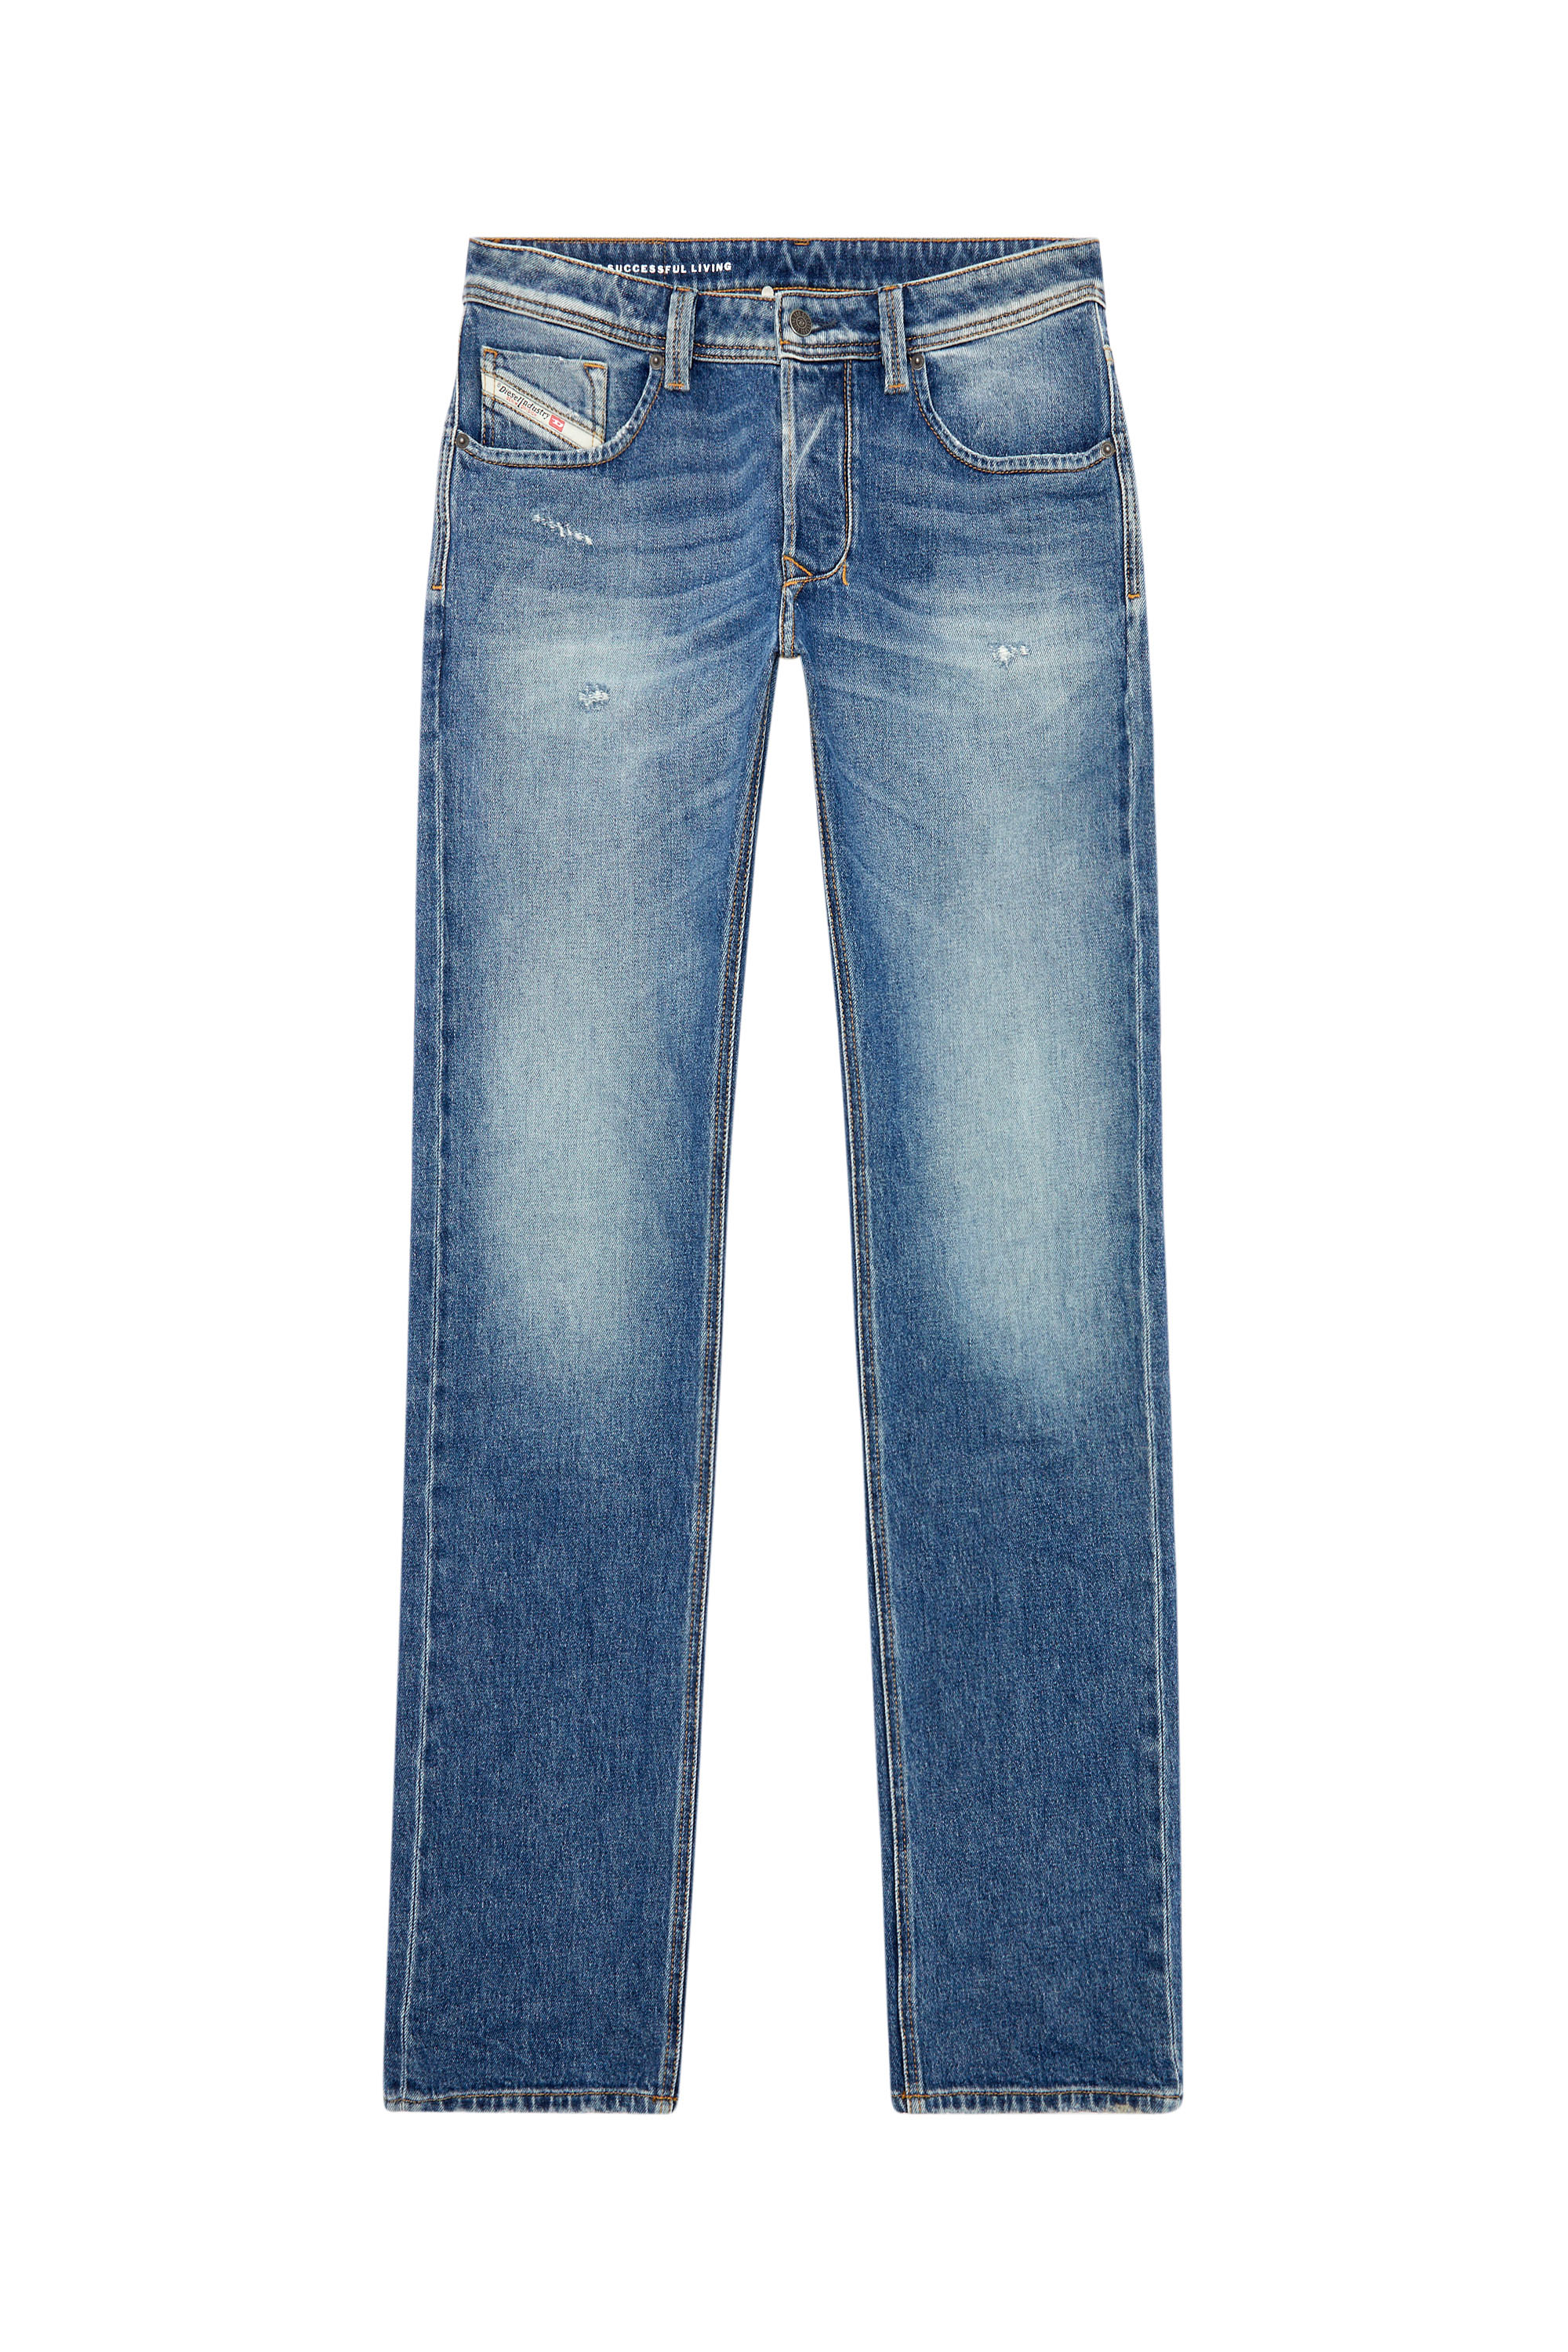 Diesel - Straight Jeans 1985 Larkee 09I16, Medium blue - Image 3